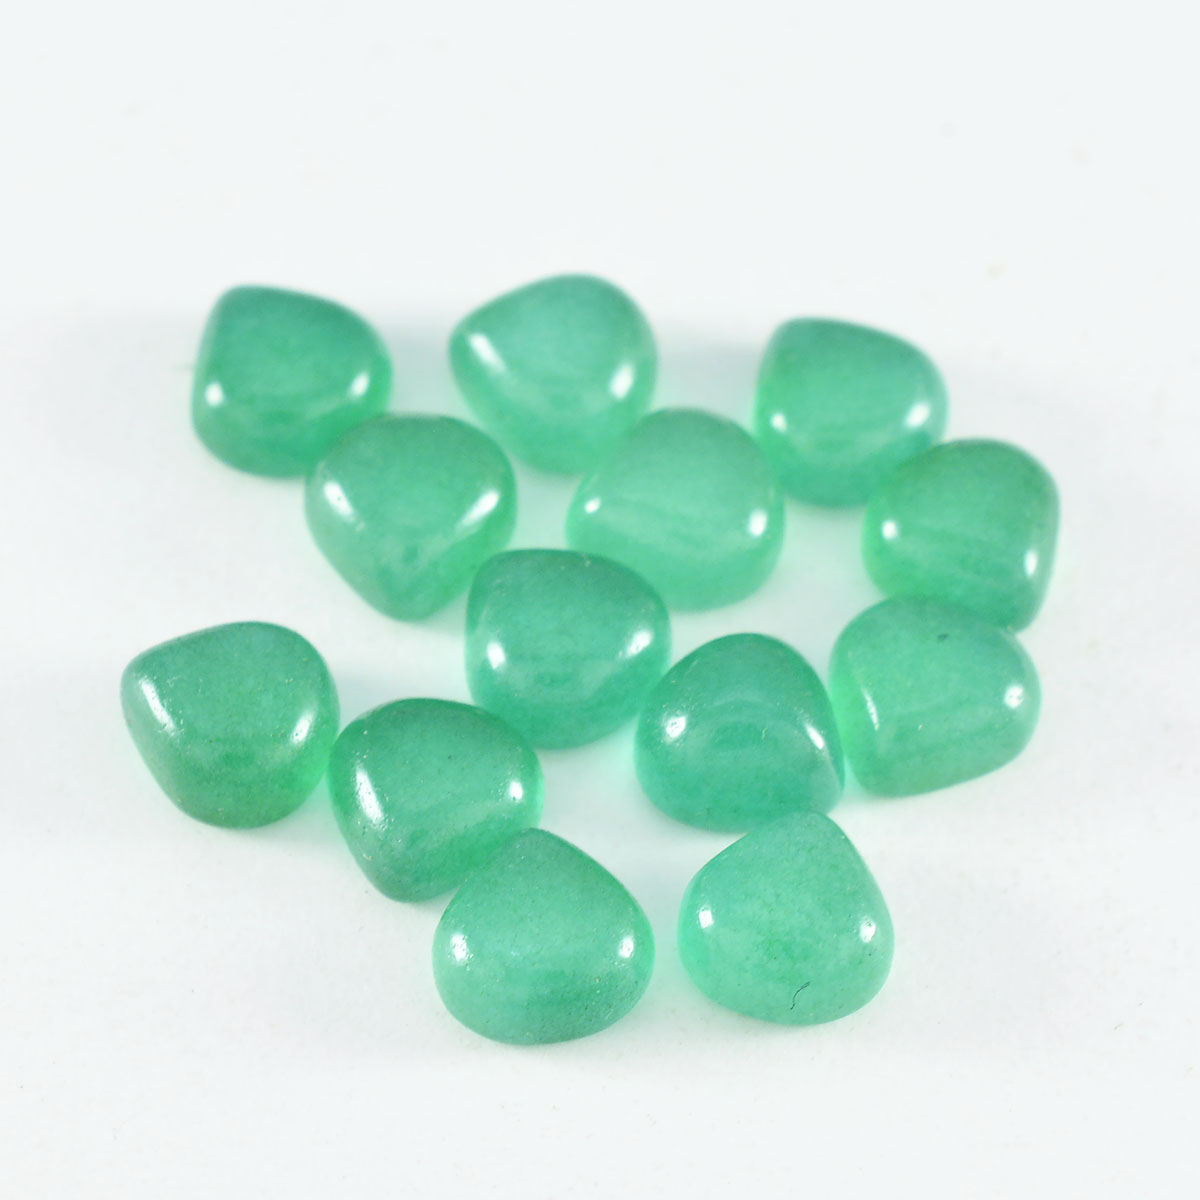 riyogems 1 шт. зеленый оникс кабошон 7x7 мм в форме сердца красивый качественный свободный драгоценный камень